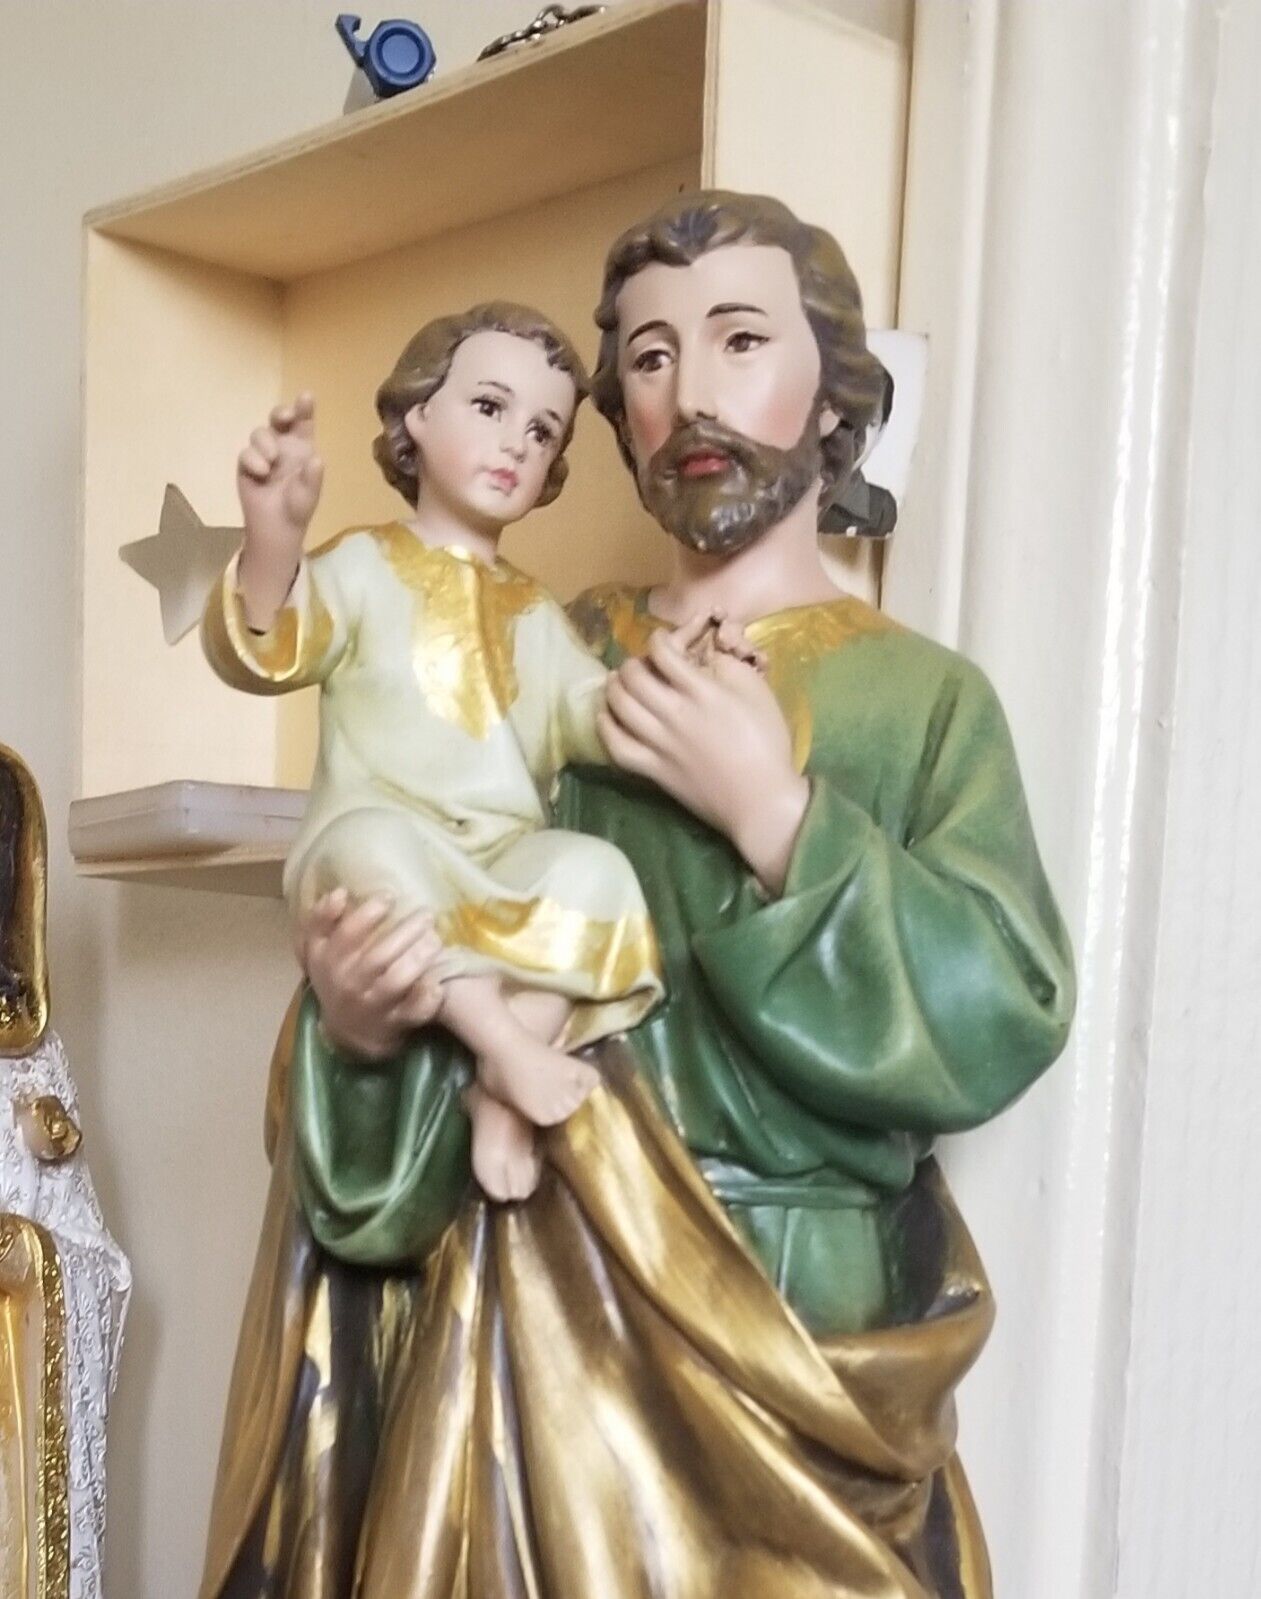 san jose with baby jesus statue